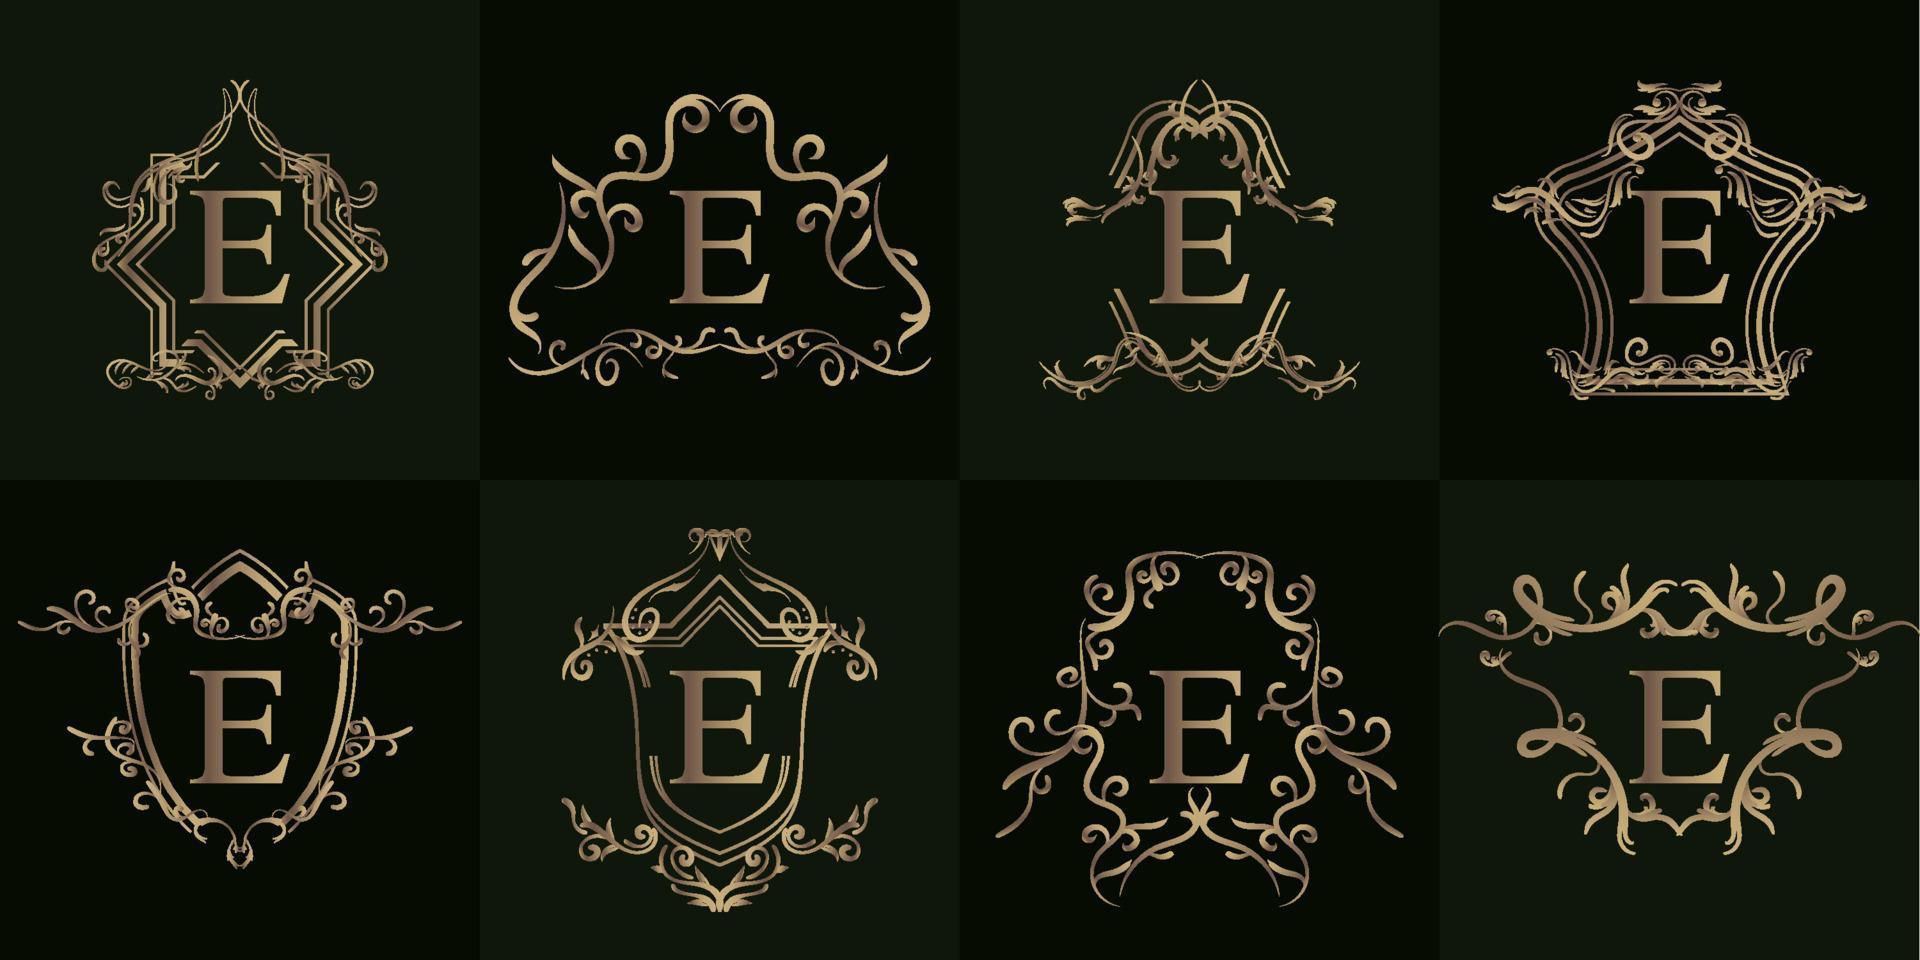 samling av logotyp initial e med lyxig prydnad eller blomram vektor